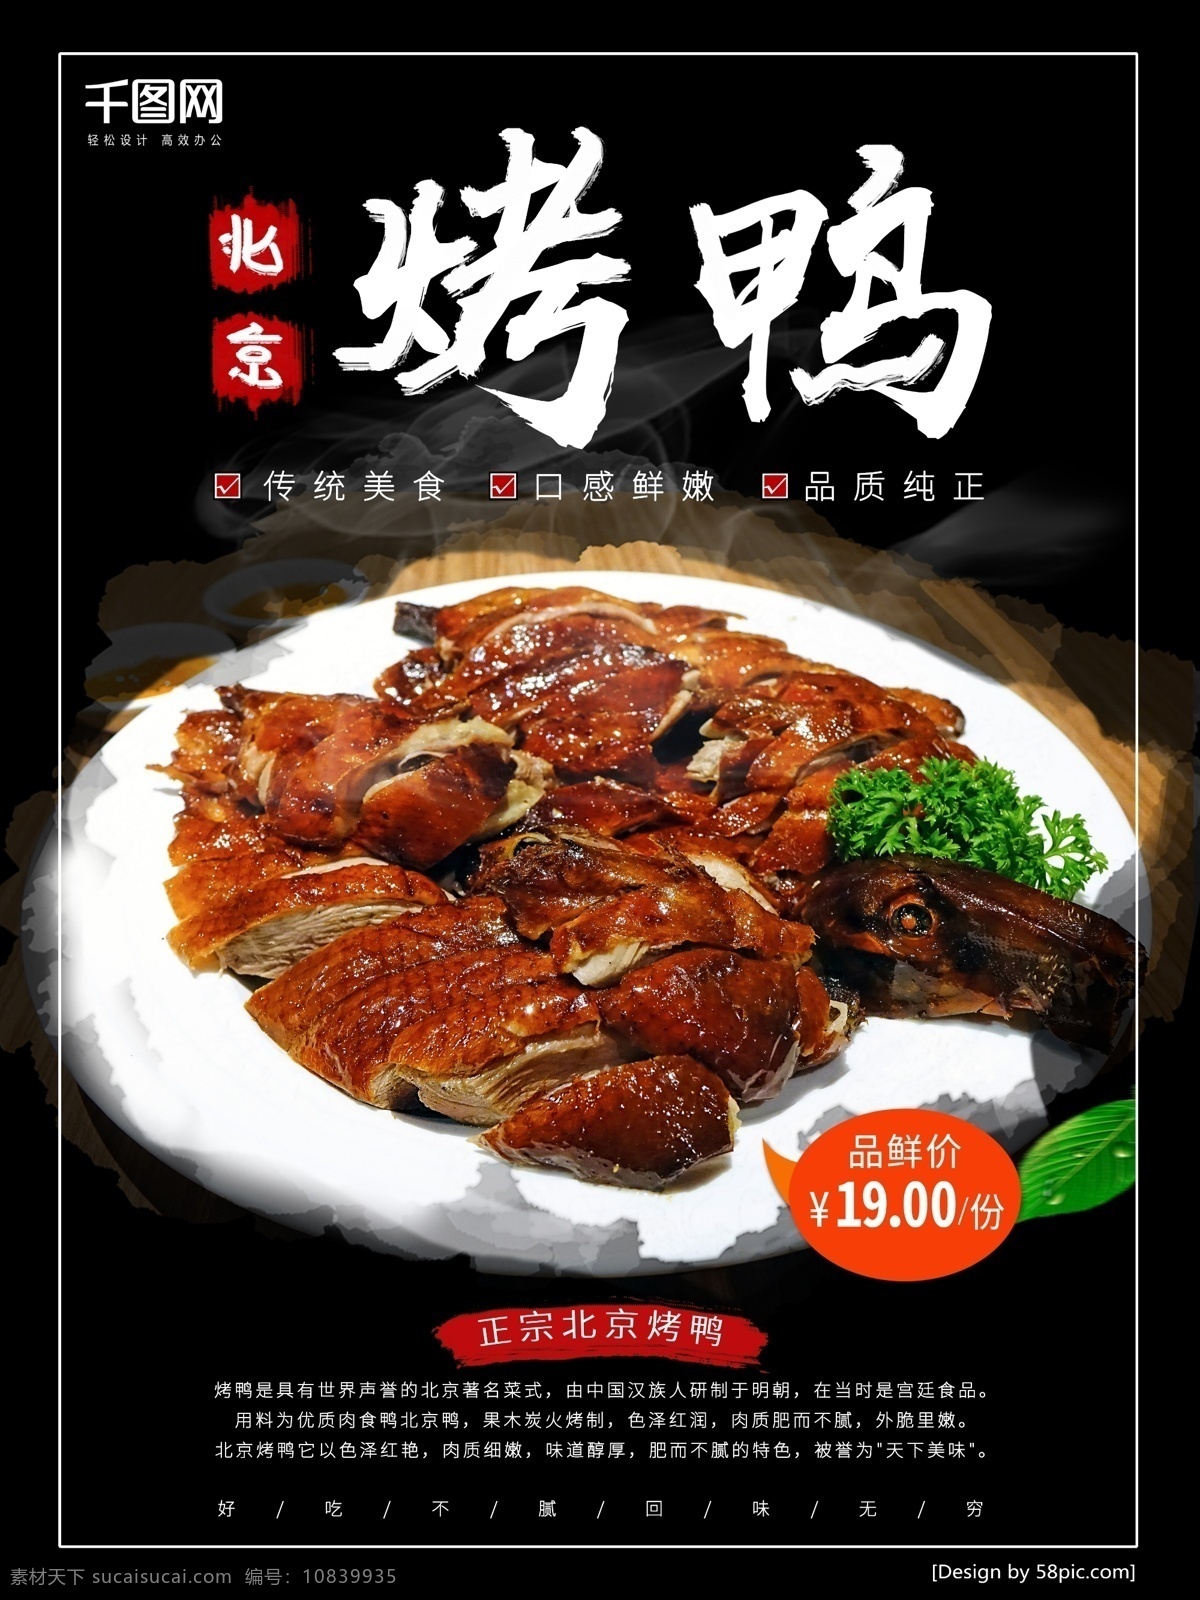 黑色 大气 北京 烤鸭 餐饮 促销 海报 餐饮促销海报 烤鸭海报 北京烤鸭 美食海报